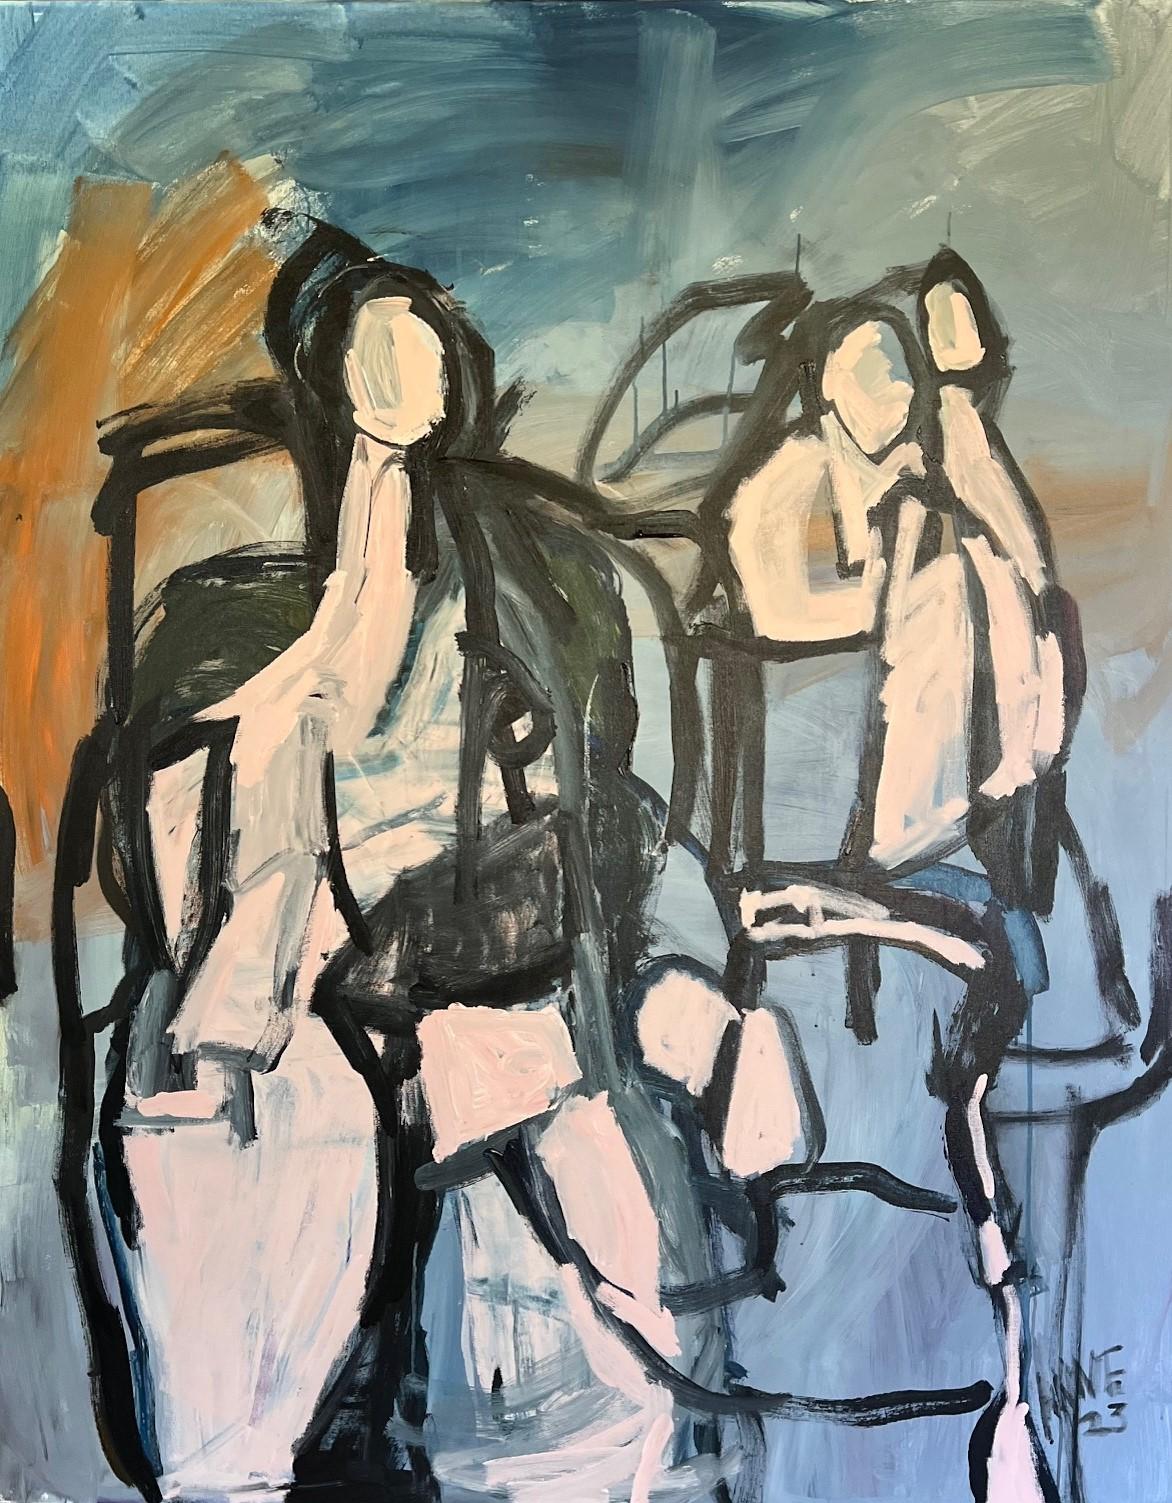 Trio de céruléennes par Anne Darby Parker, figure cubiste contemporaine sur toile